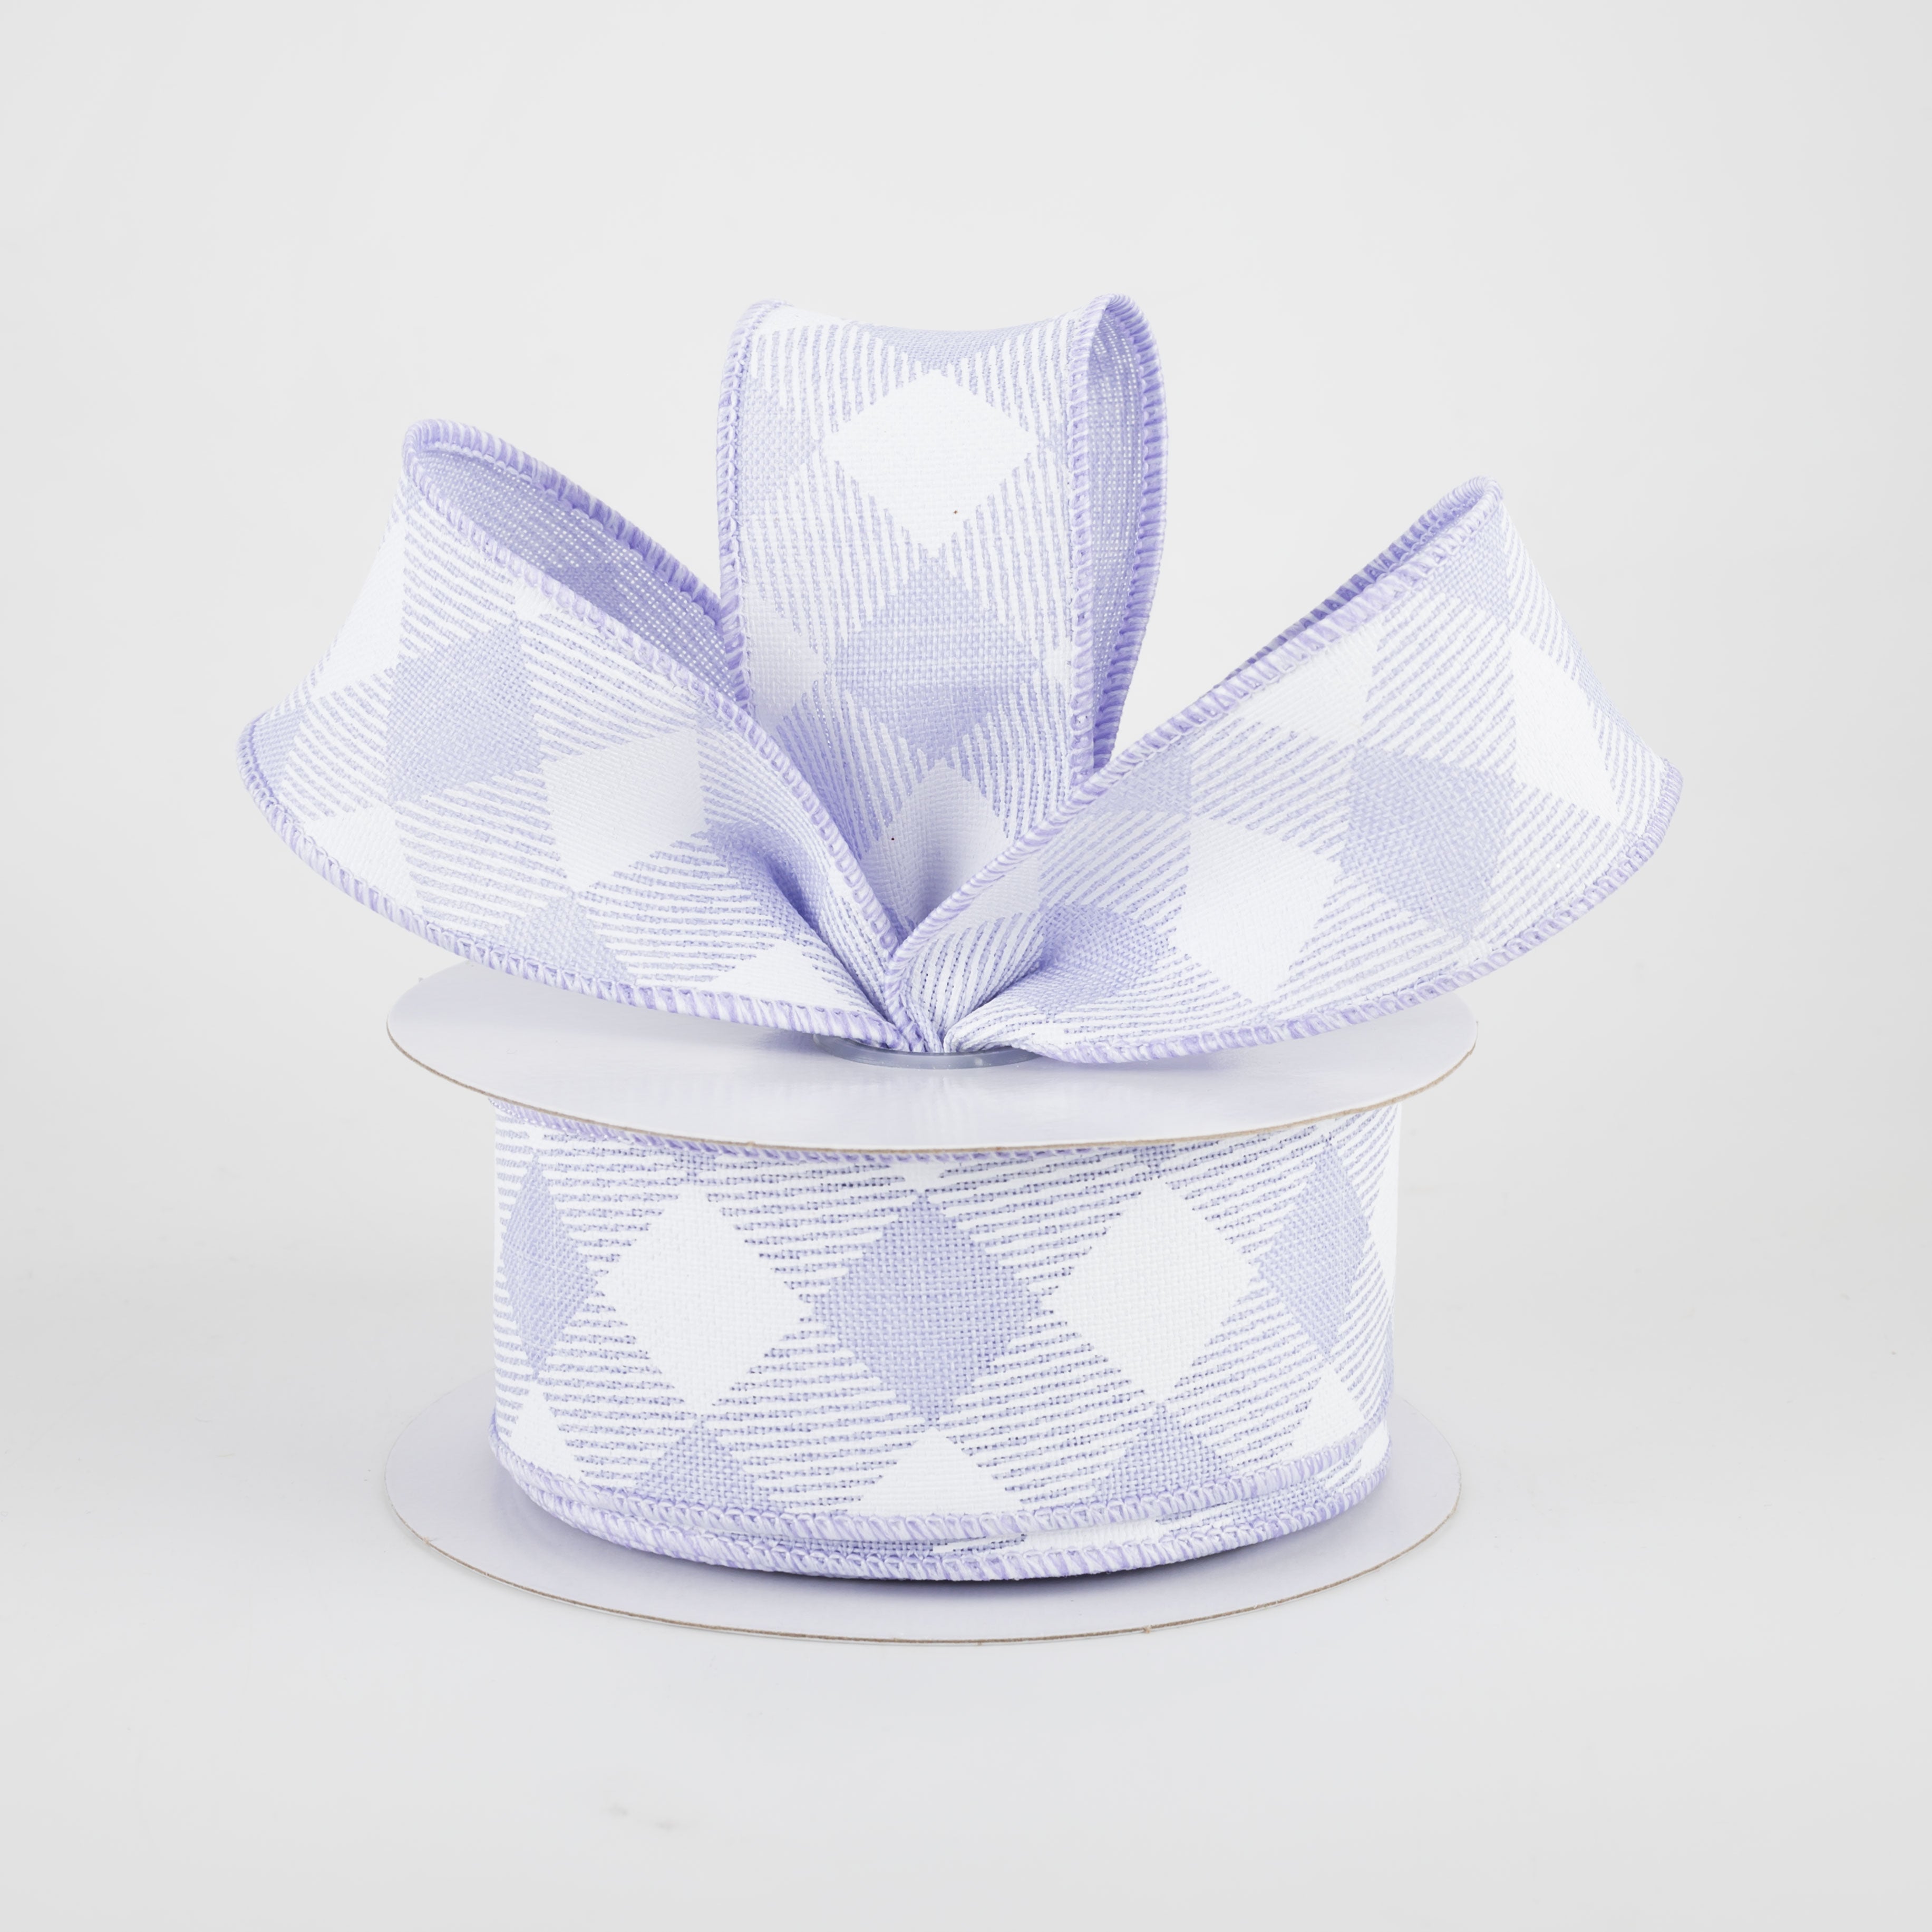 1.5" Diagonal Check Ribbon: Light Lavender & White (10 Yards)